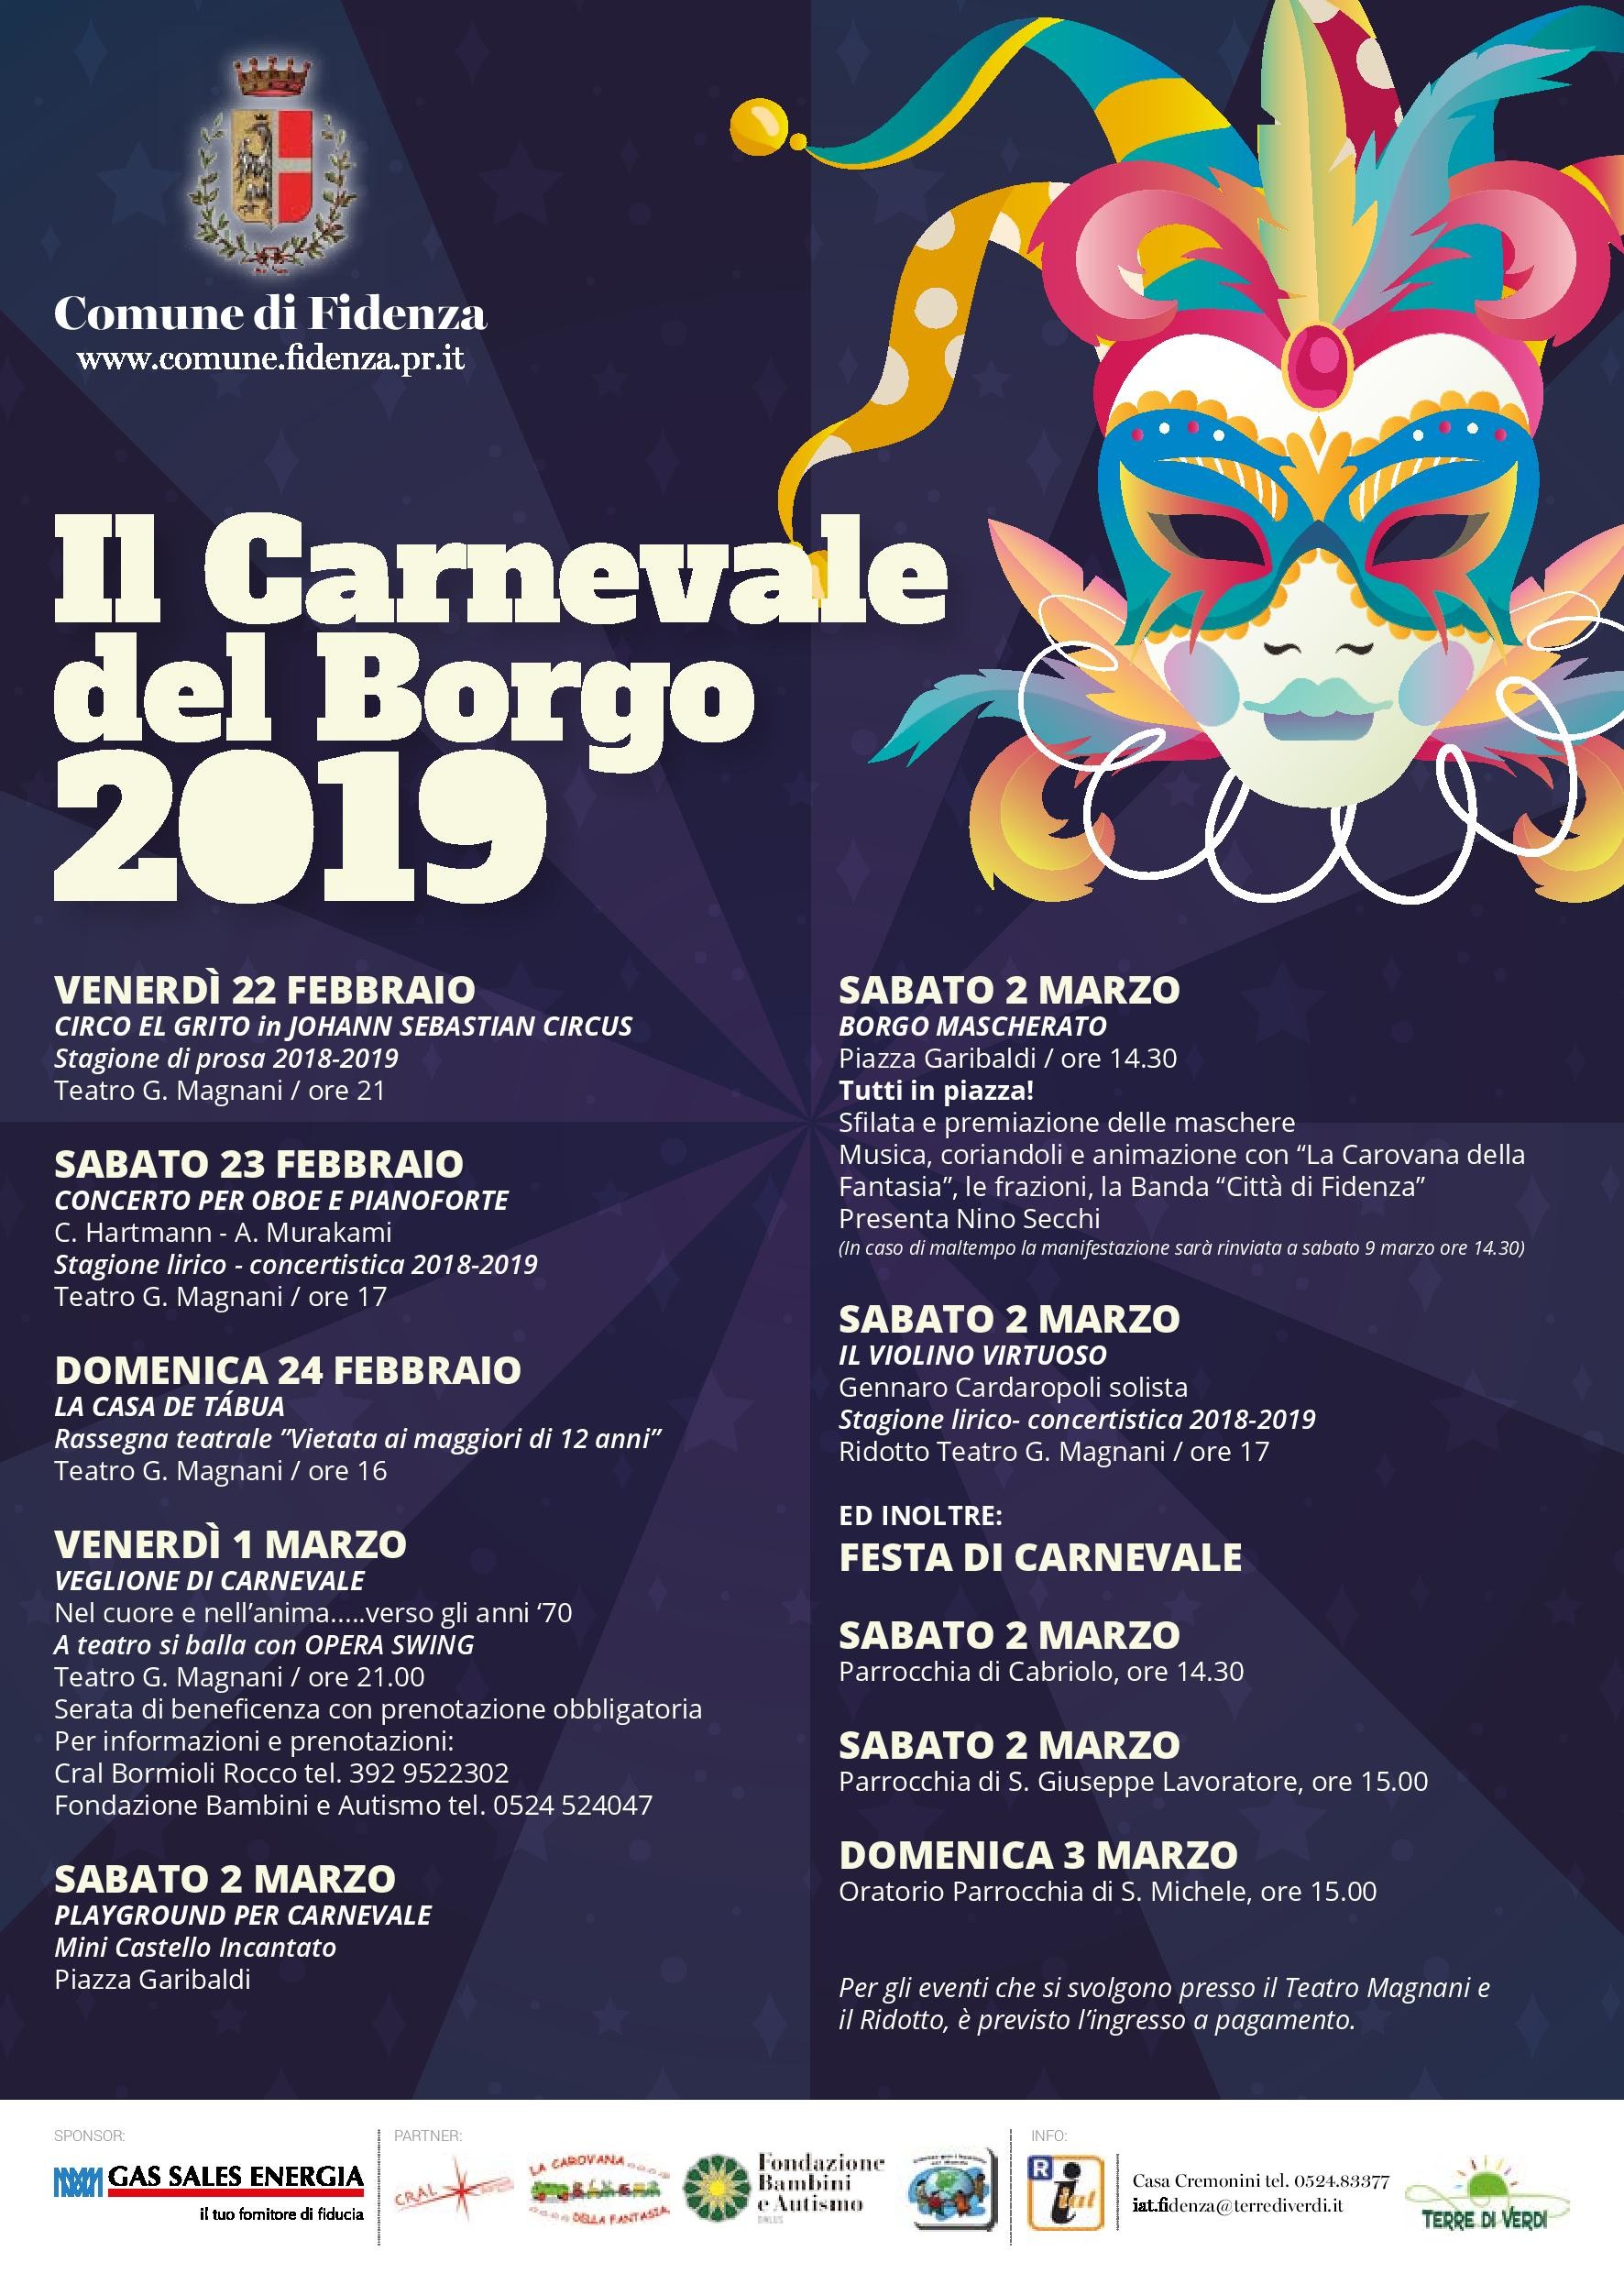 Il Carnevale del Borgo 2019: buon divertimento!